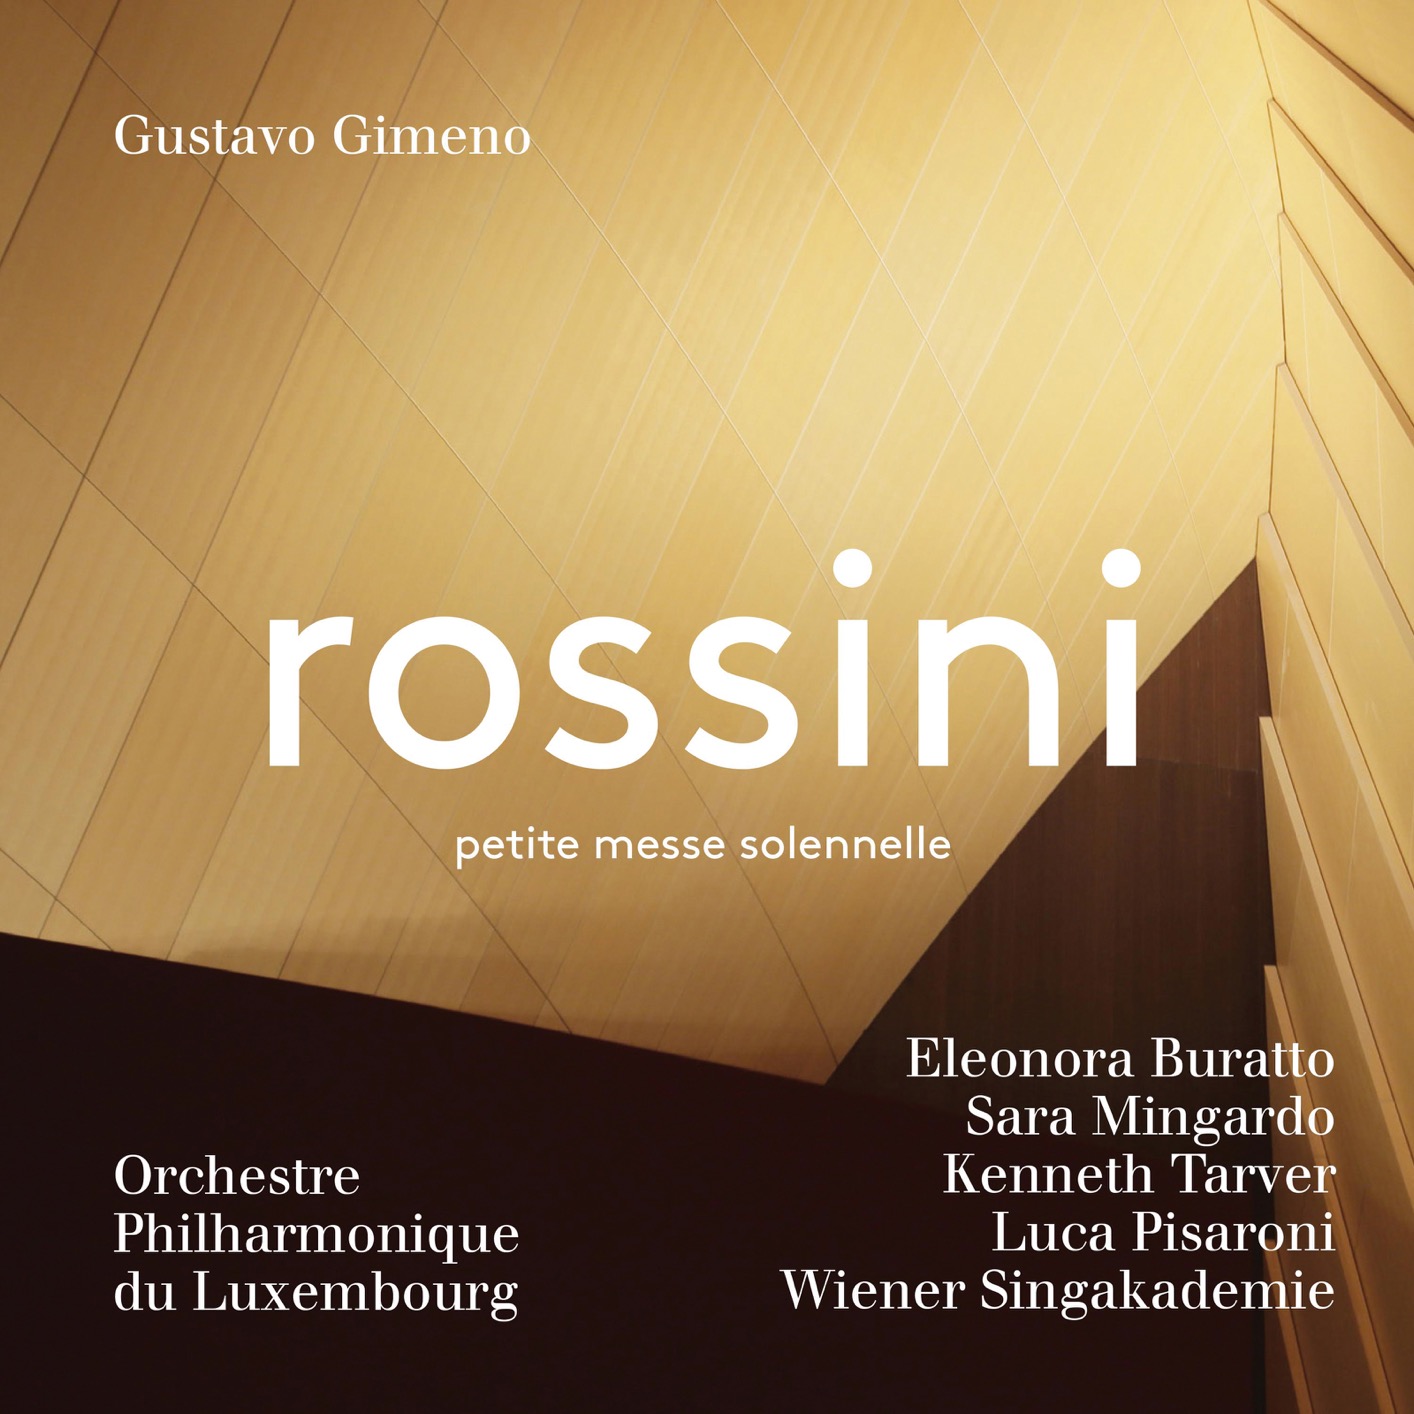 Orchestre Philharmonique du Luxembourg & Gustavo Gimeno - Rossini: Petite messe solennelle (2019) [FLAC 24bit/96kHz]